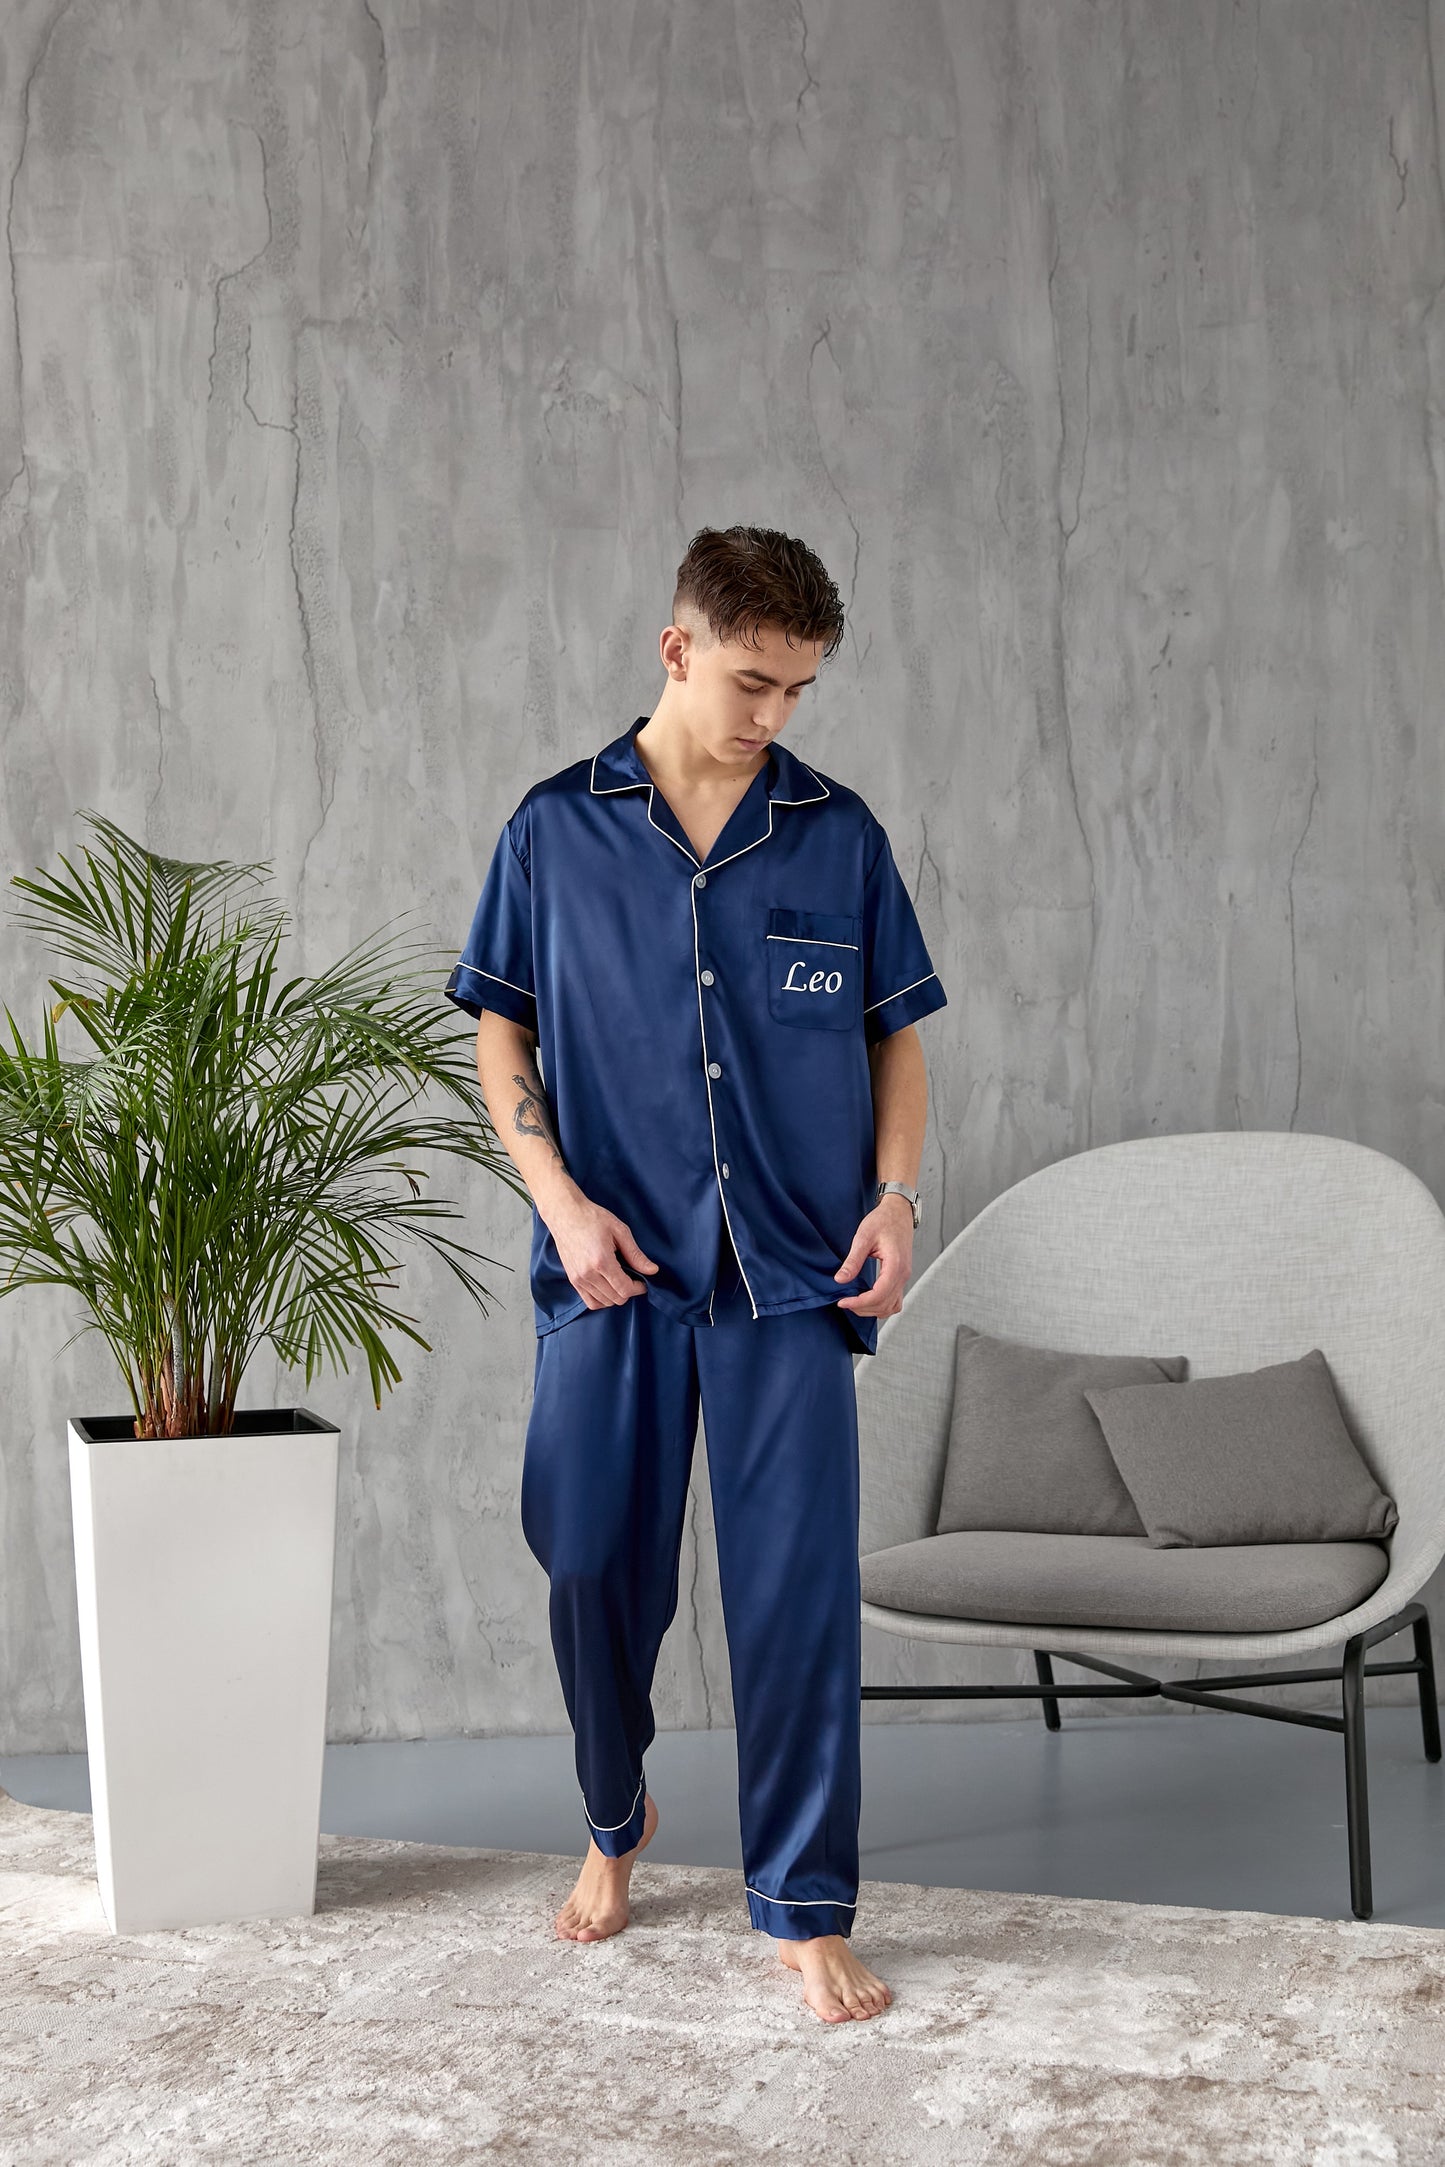 Men's Satin Pajama Set Short Sleeves + Pants